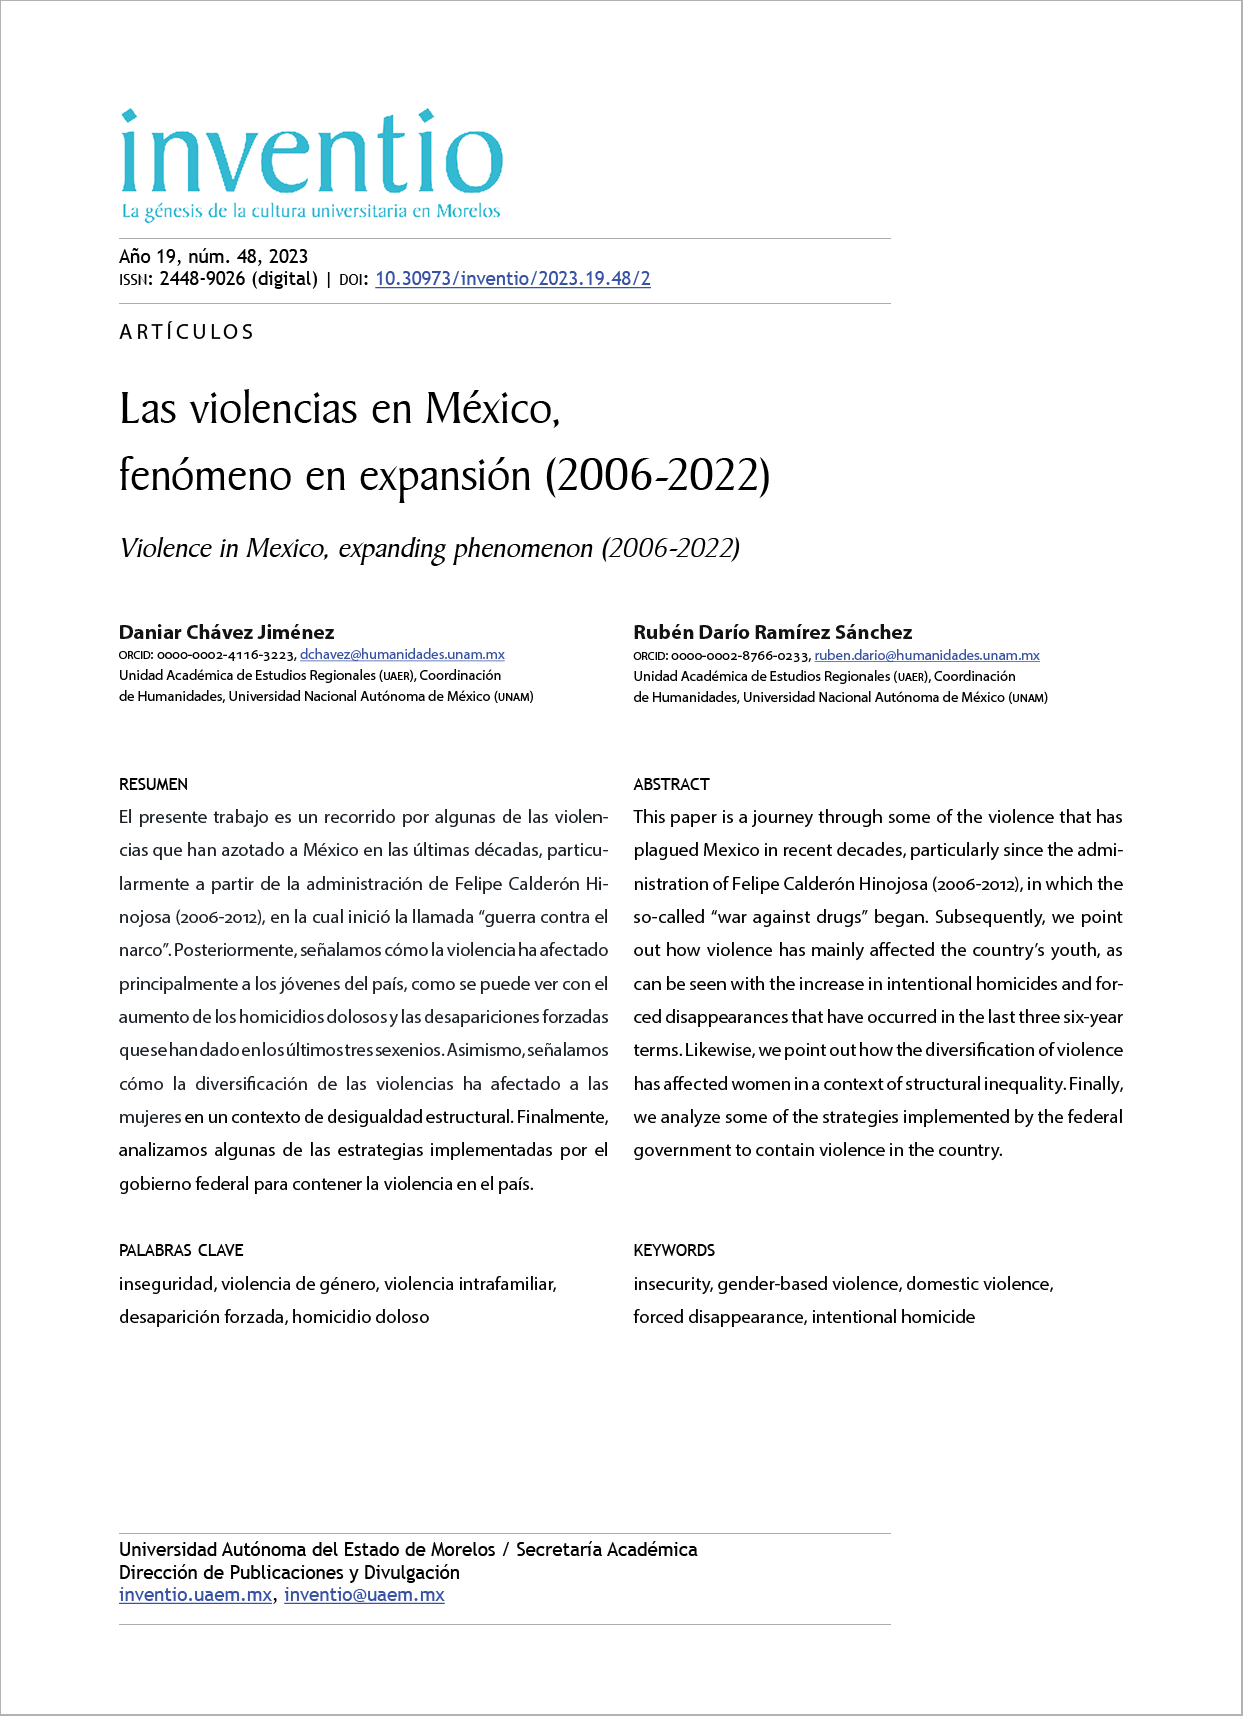 Las violencias en México, fenómeno en expansión (2006-2022)